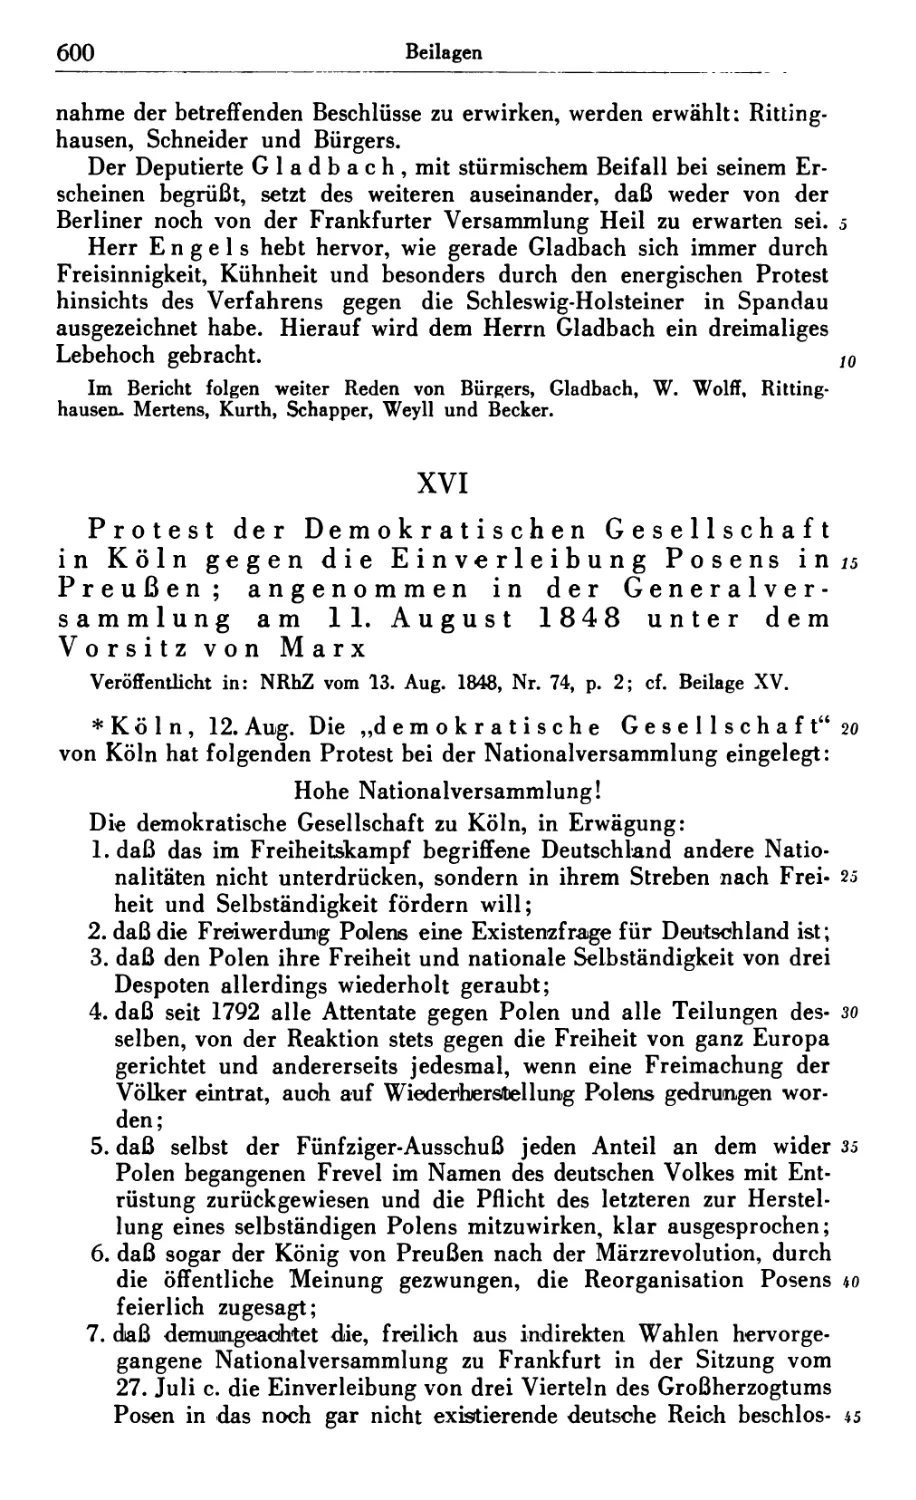 XVI. Protest der Demokratischen Gesellschaft in Köln gegen die Einverleibung Posens in Preußen; angenommen in der Generalversammlung am 11. August 1848 unter dem Vorsitz von Marx